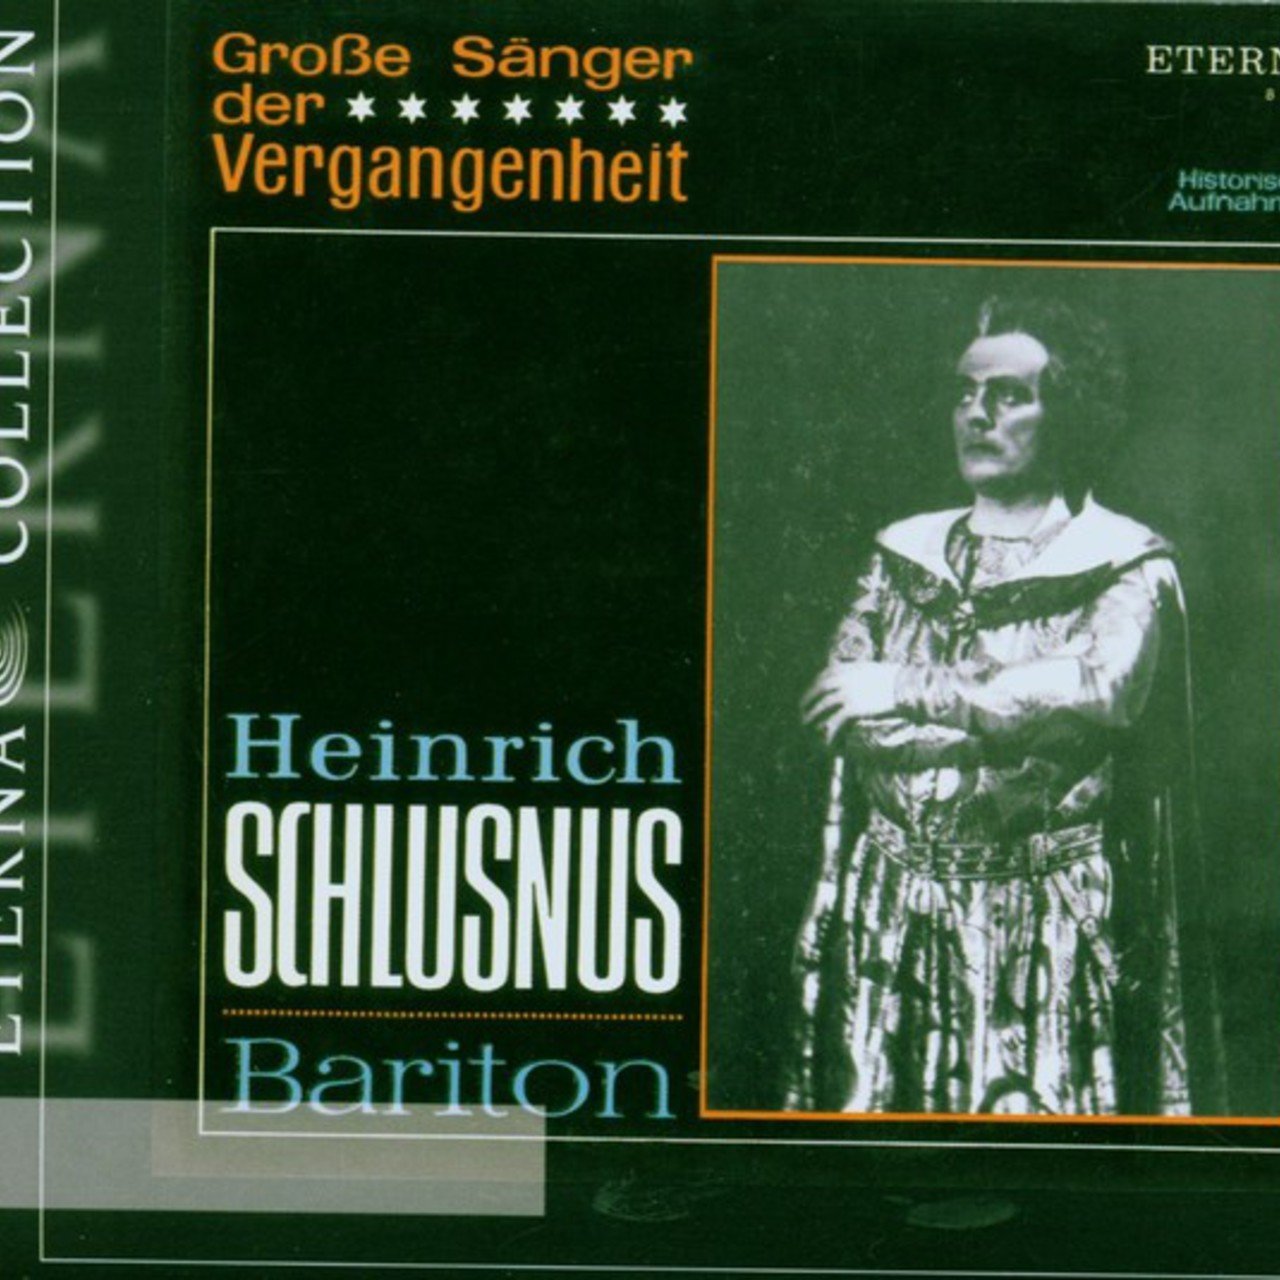 Heinrich Schlusnus (1888-08-06 – 1952-06-18). Operatic baritones